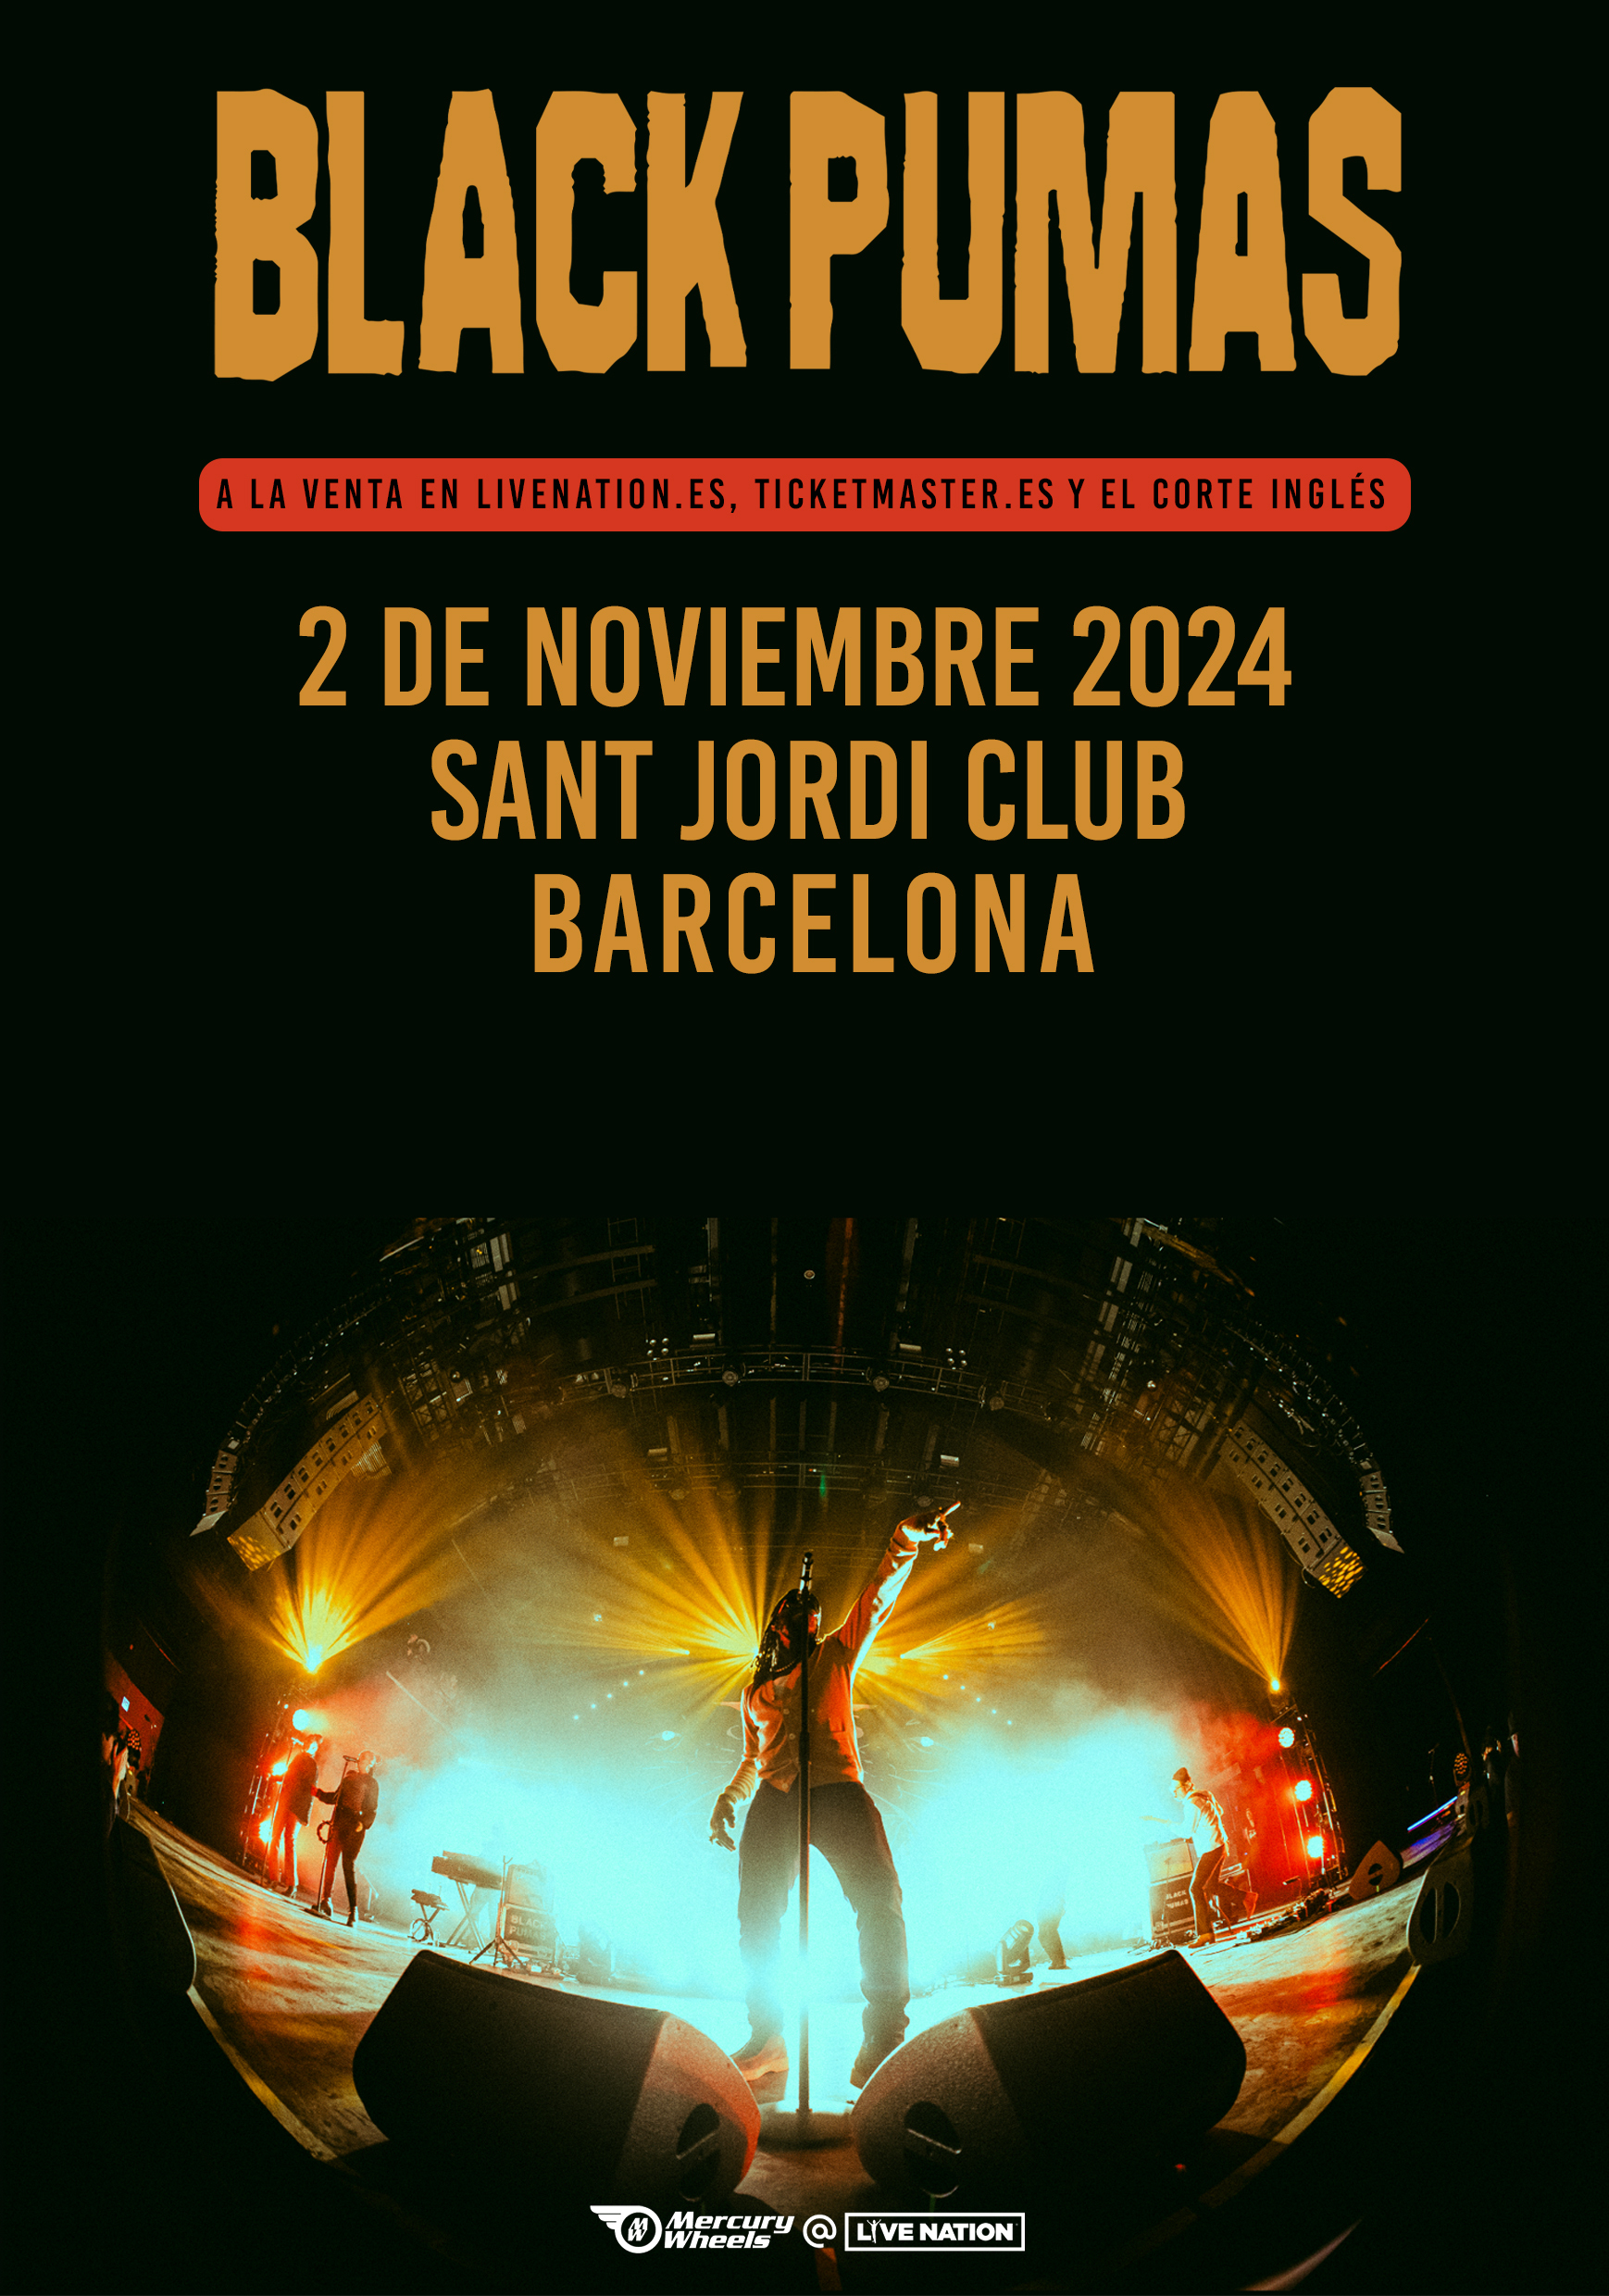 Black Pumas anuncian concierto en el Sant Jordi Club de Barcelona el 2 de noviembre de 2024